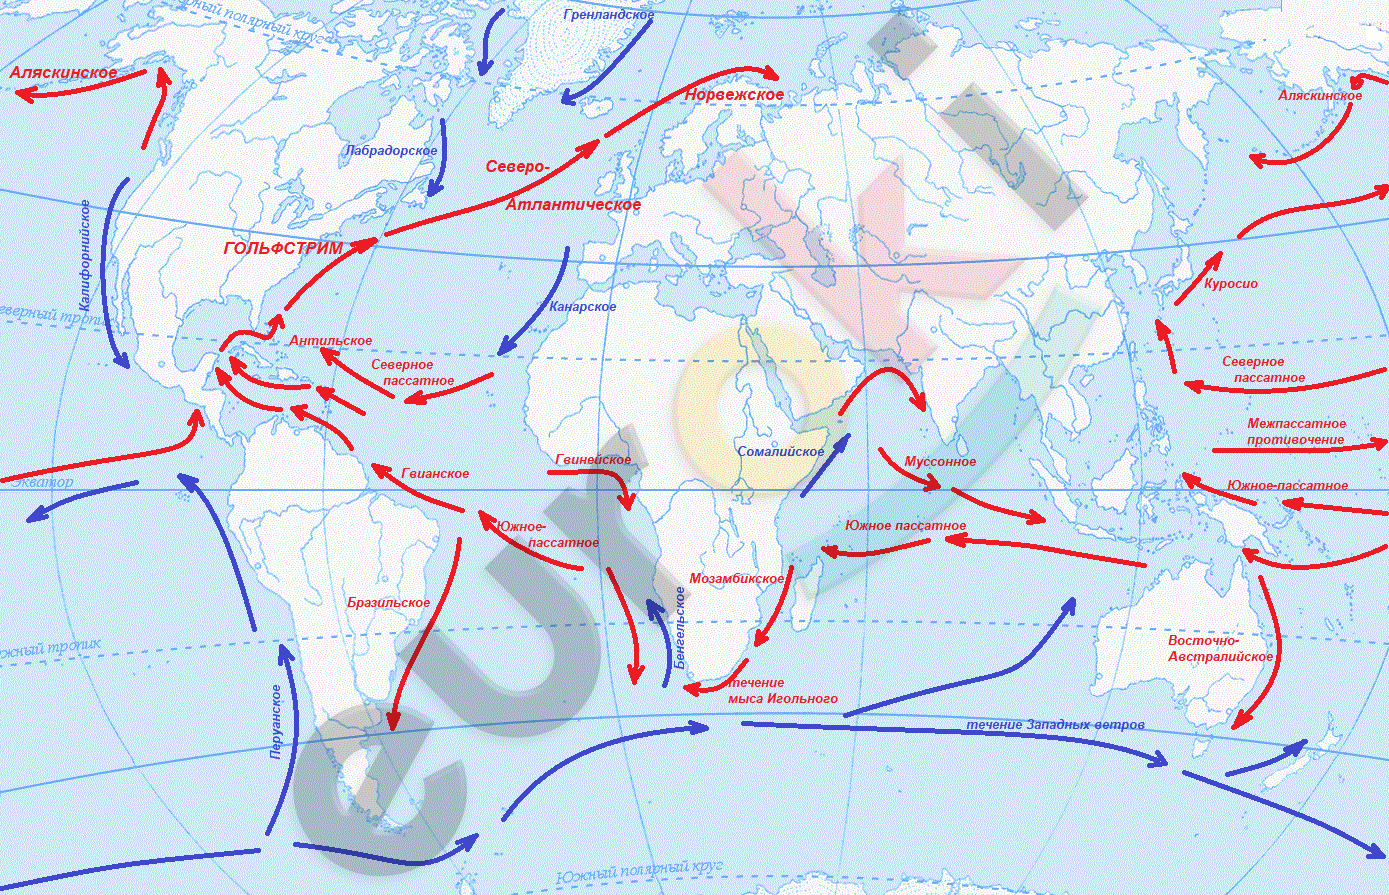 Теплые течения лабрадорское. Лабрадорское течение на карте. Северо-атлантическое течение на карте. Канарское течение на карте. Течение западных ветров на карте.